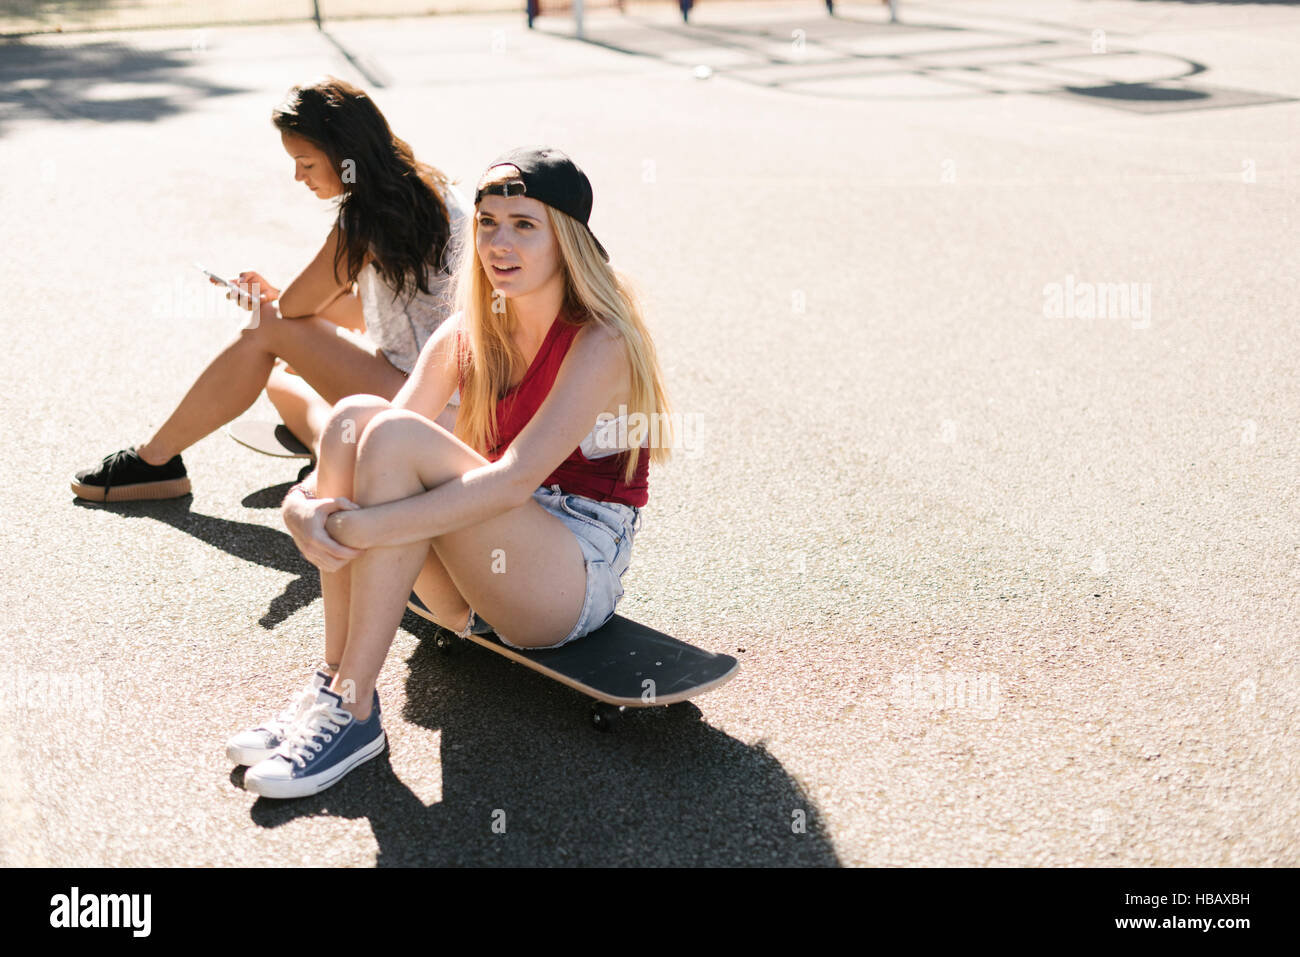 Deux amis femelles adultes assis sur une planche à roulettes sur un terrain de basket-ball Banque D'Images